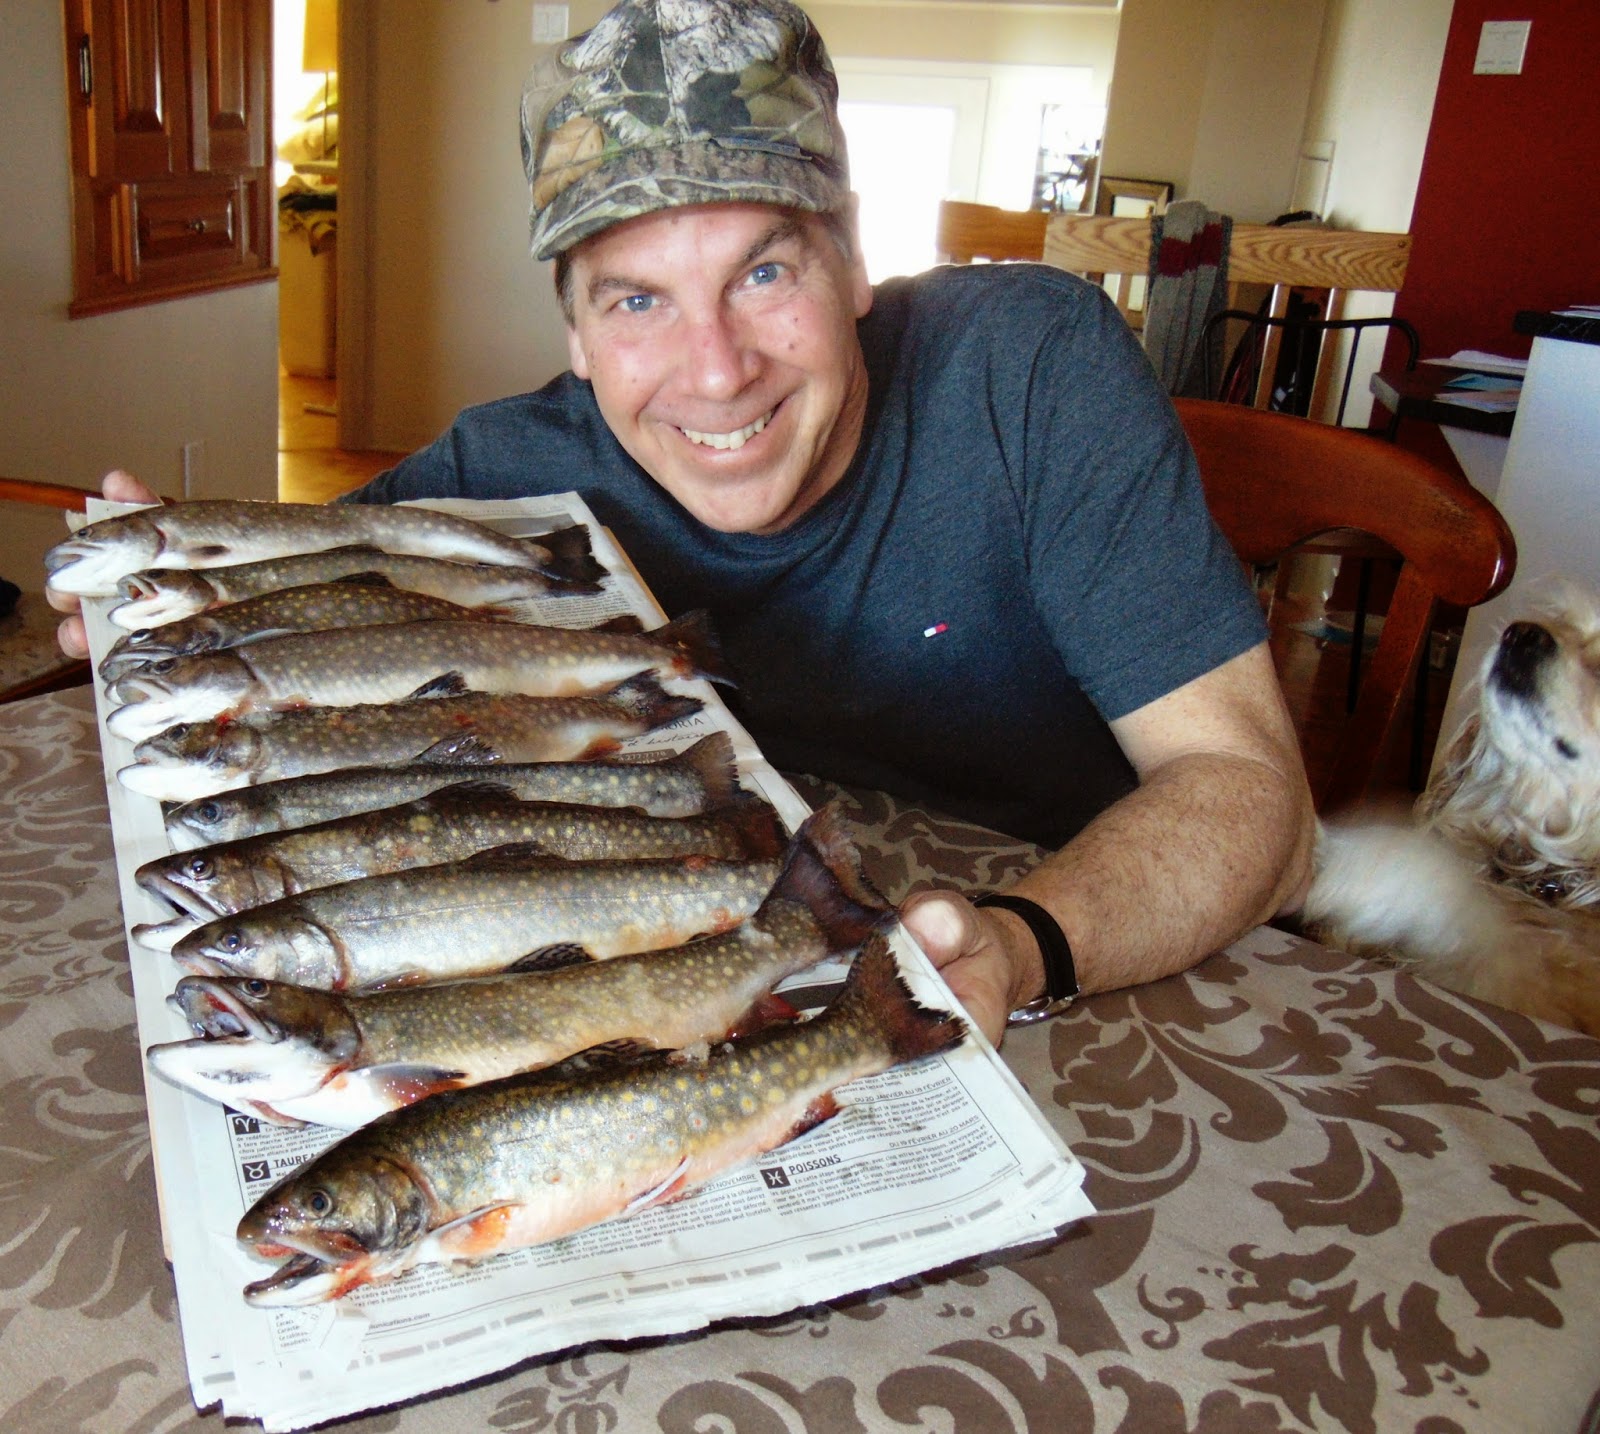 Pêche truite mouchetée en hiver, pêche omble de fontaine sur glace, Daniel Lefaivre, blogue de pêche